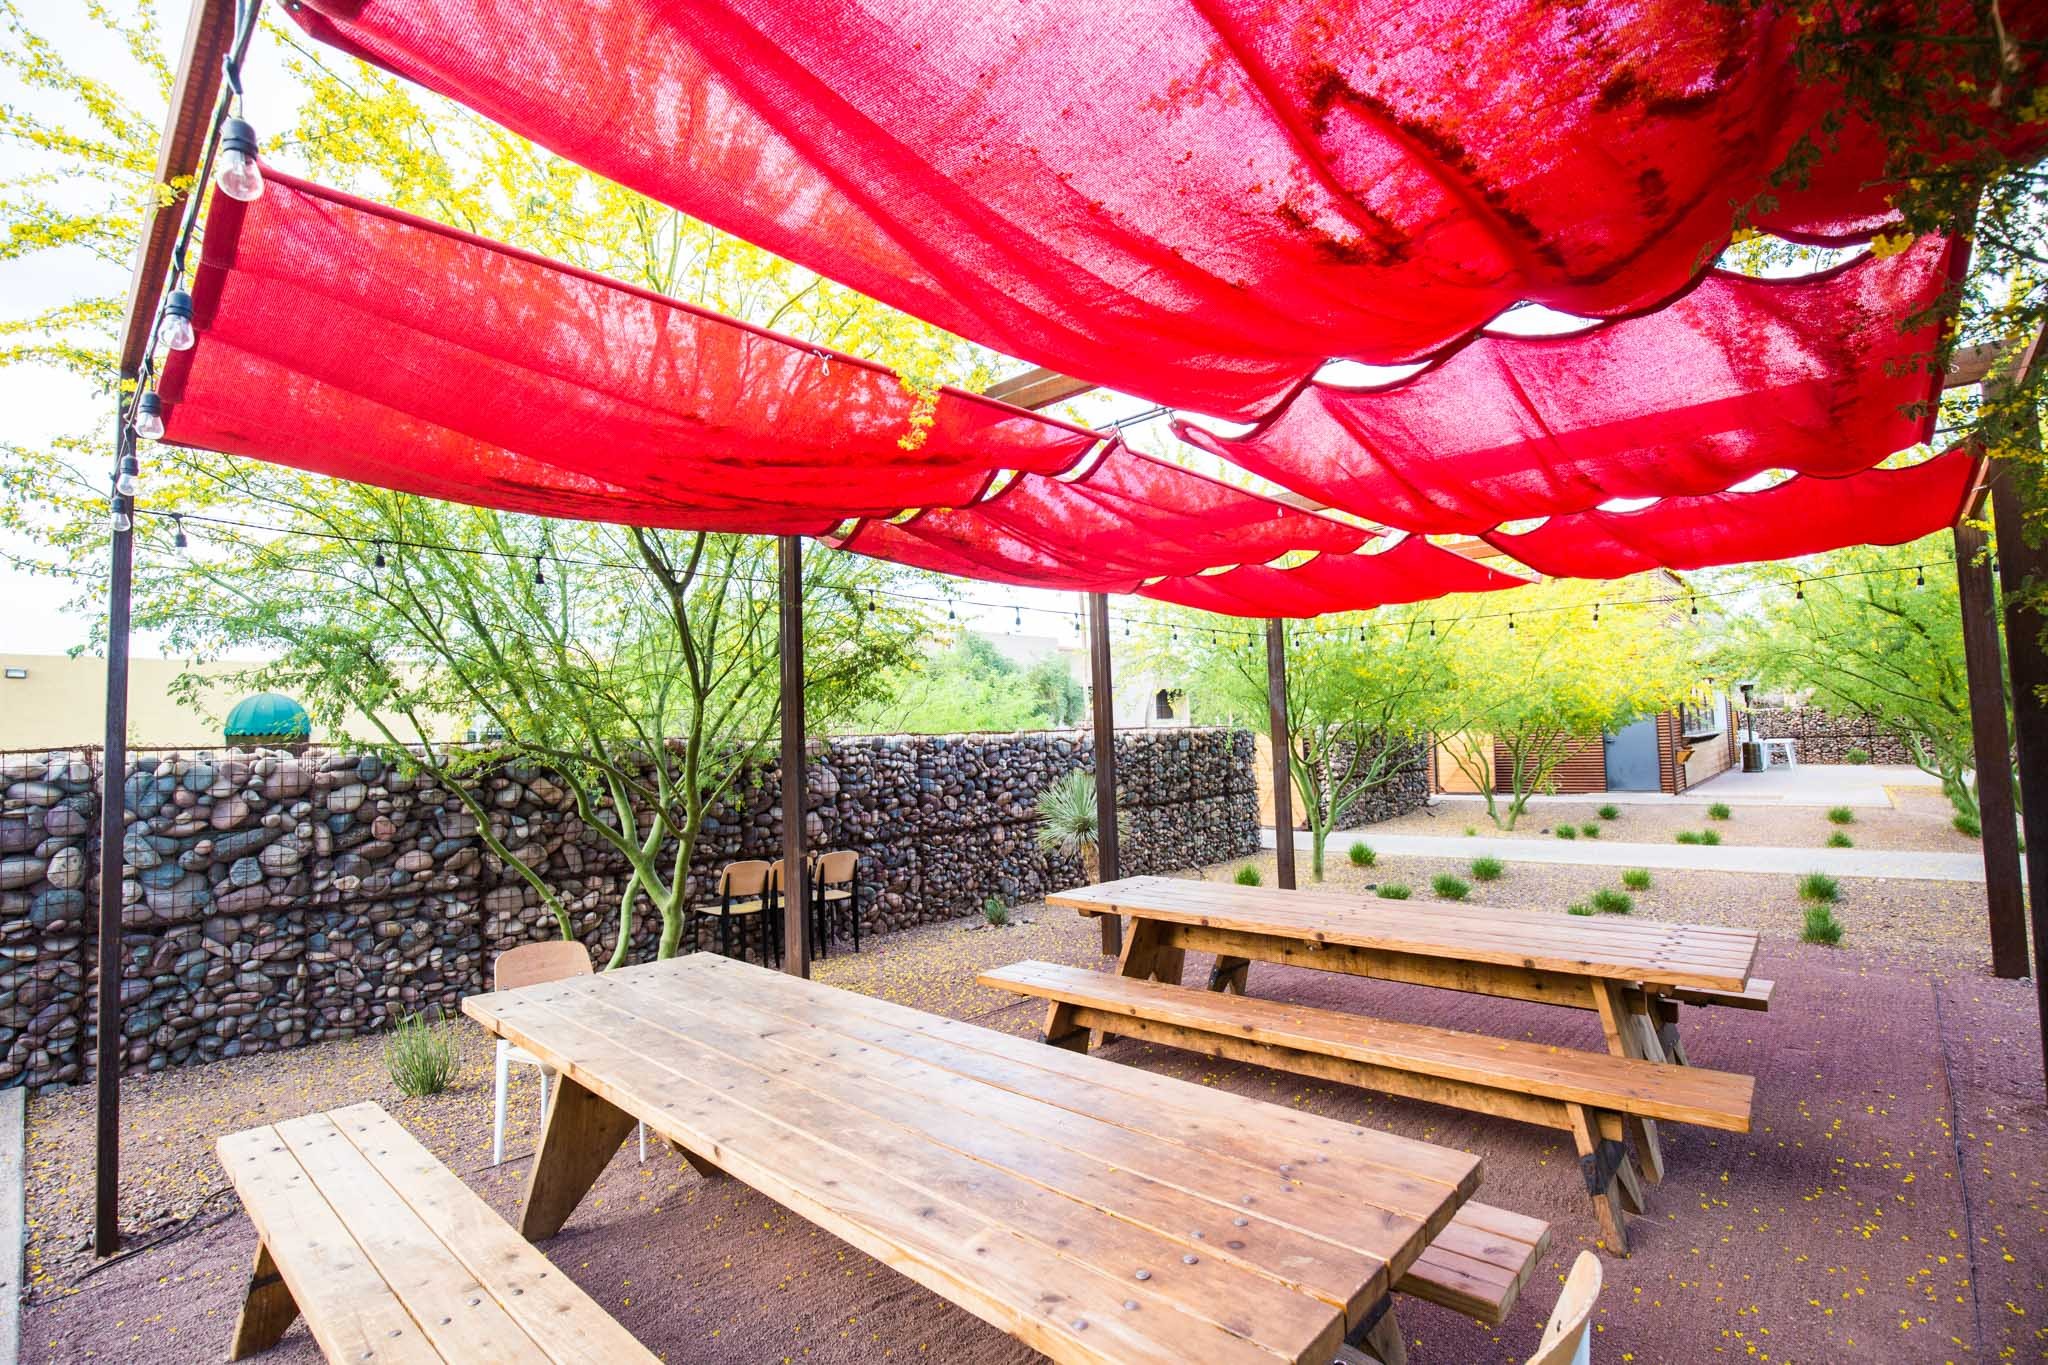 15 Best Restaurant Patios for Outdoor Dining in Metro Phoenix ...